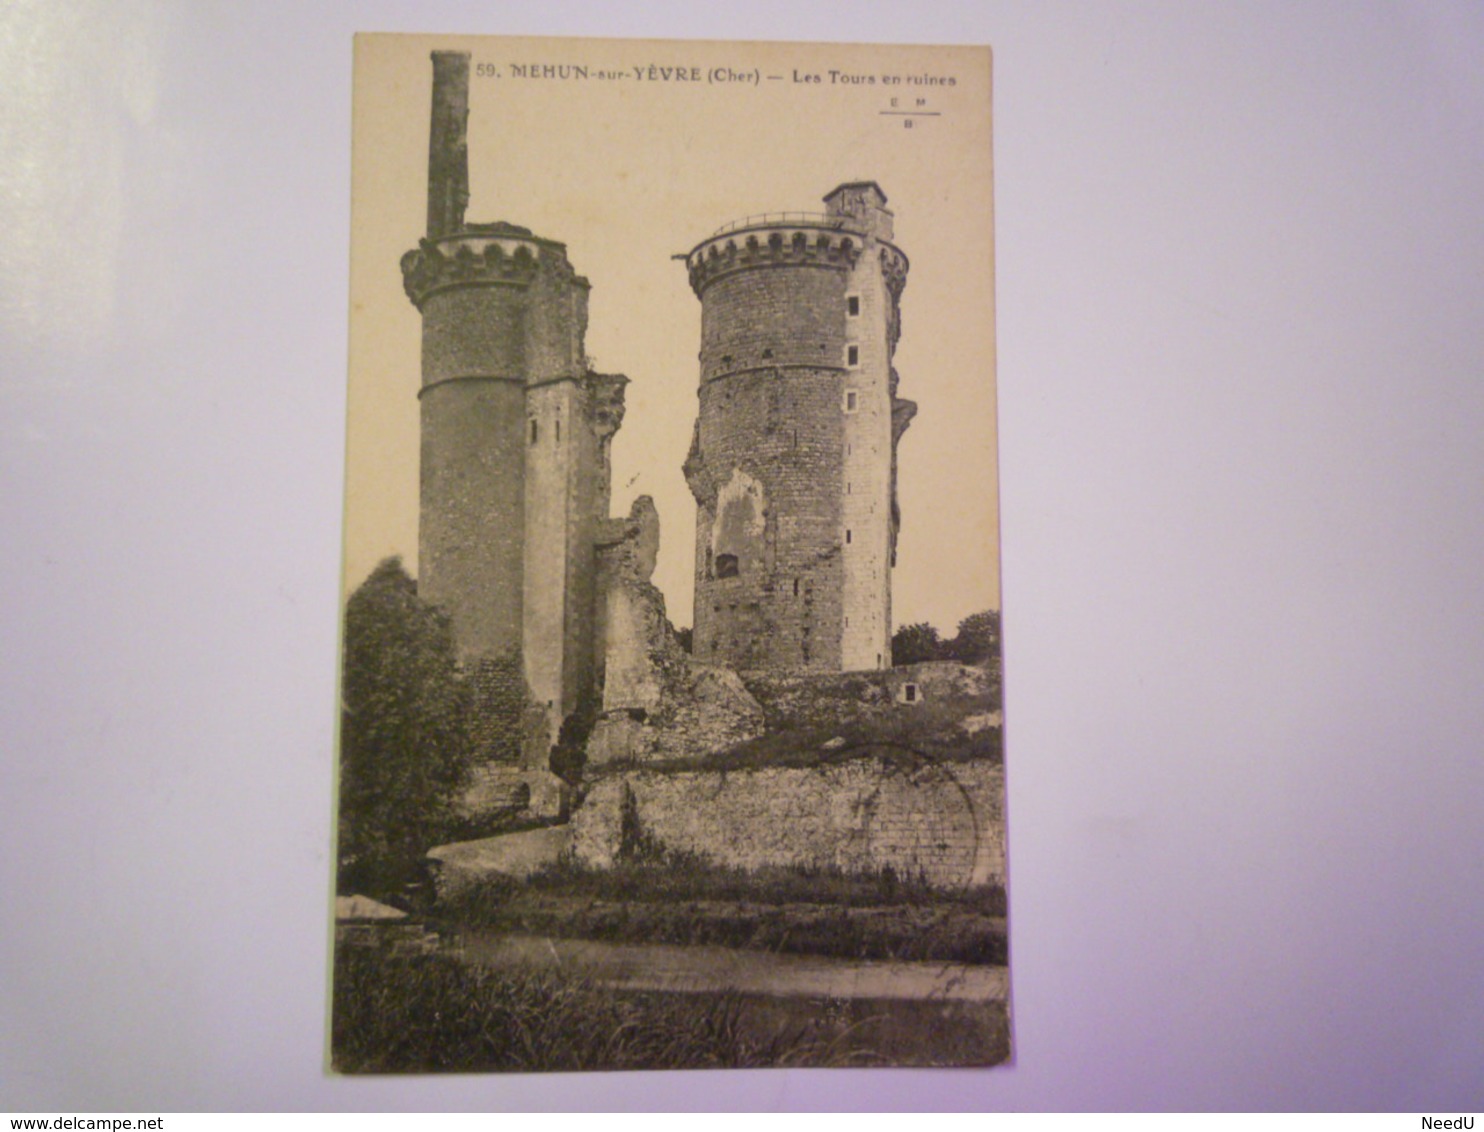 MEHUN-sur-YEVRE  (Cher)  :  Les TOURS En Ruines   1925   XXX - Mehun-sur-Yèvre